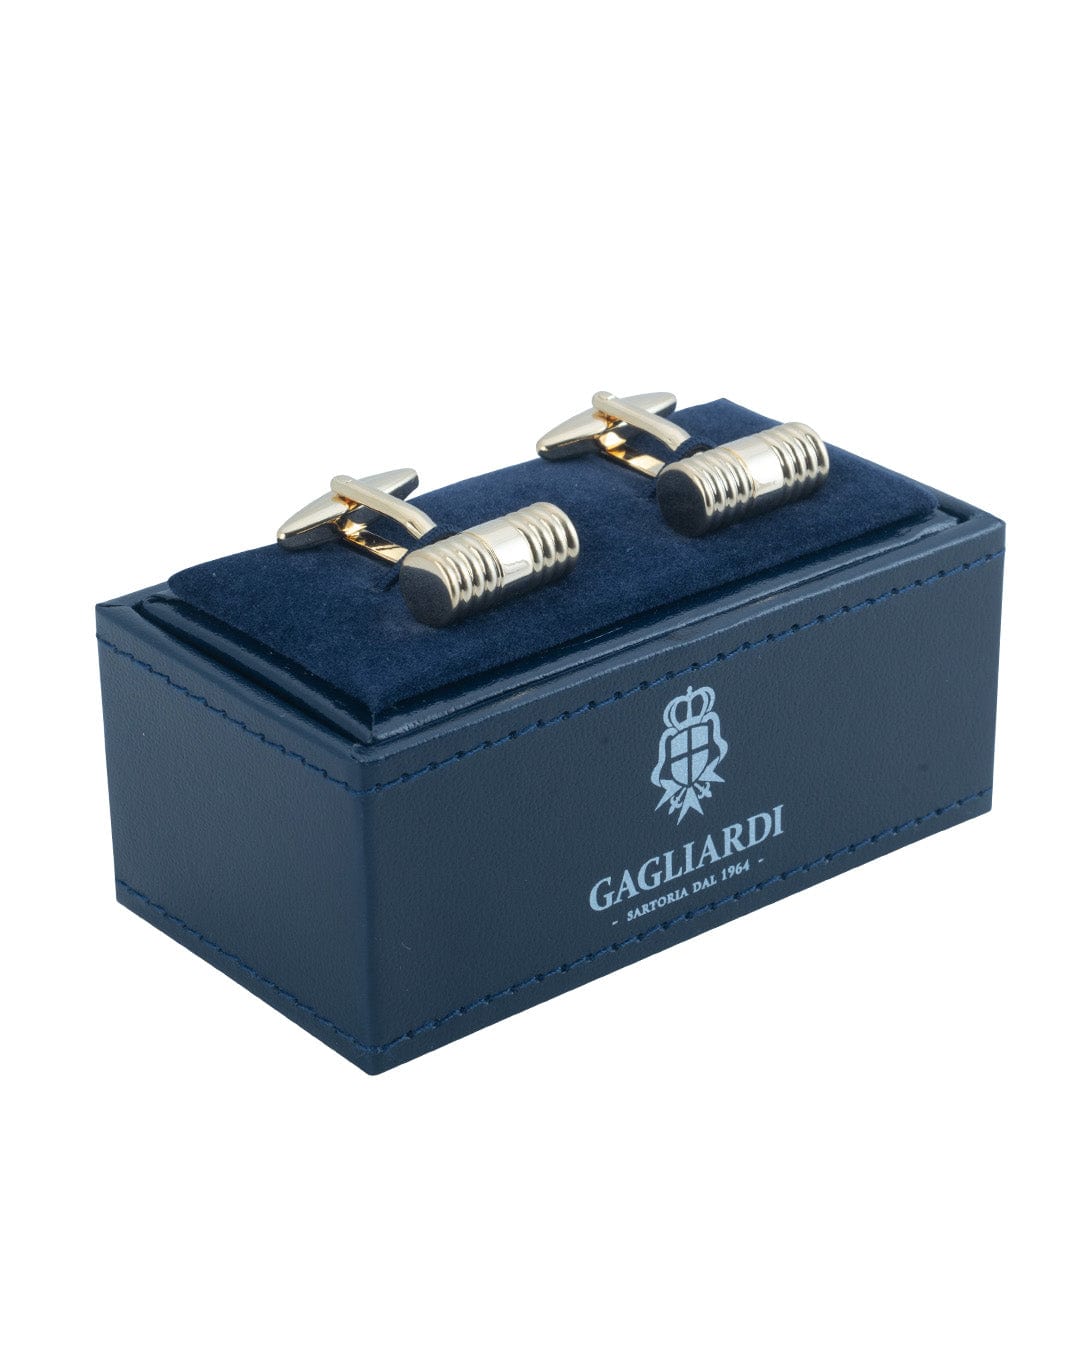 Gagliardi Cufflinks ONE Gagliardi Gold Ribbed Barrel Cufflinks